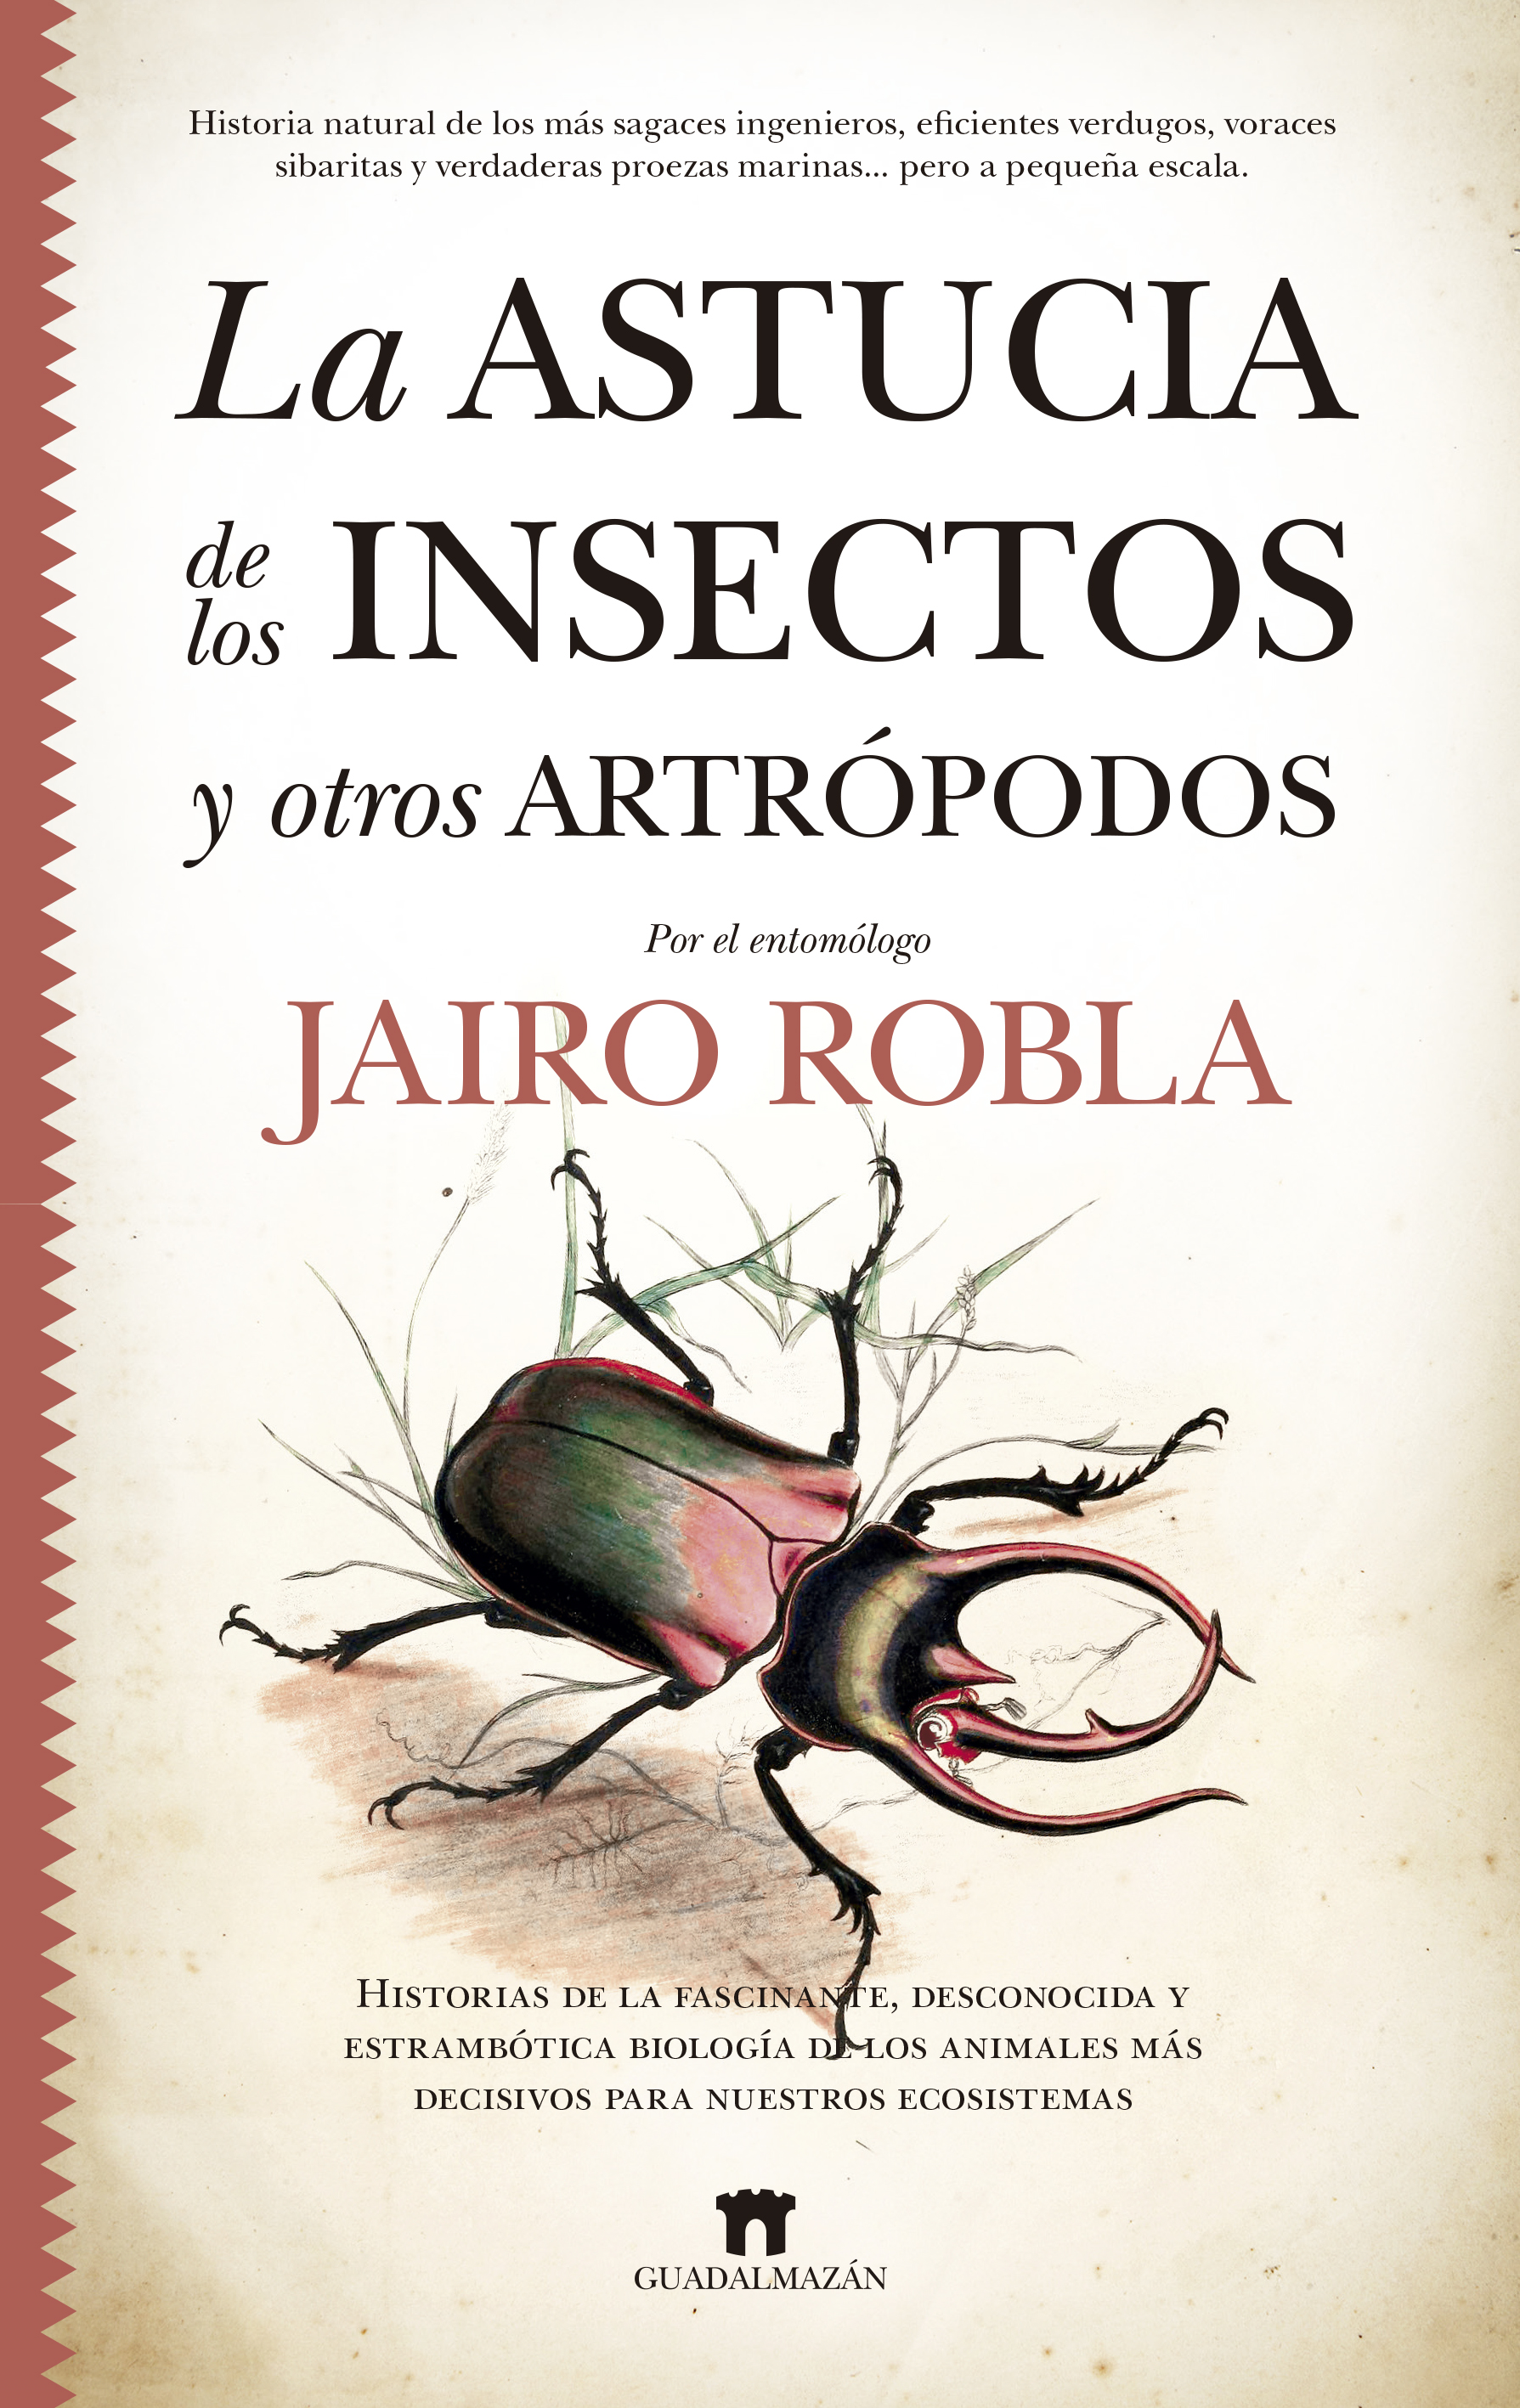 Mucho bien bueno puenting Diploma La astucia de los insectos y otros artrópodos - La tienda de libros